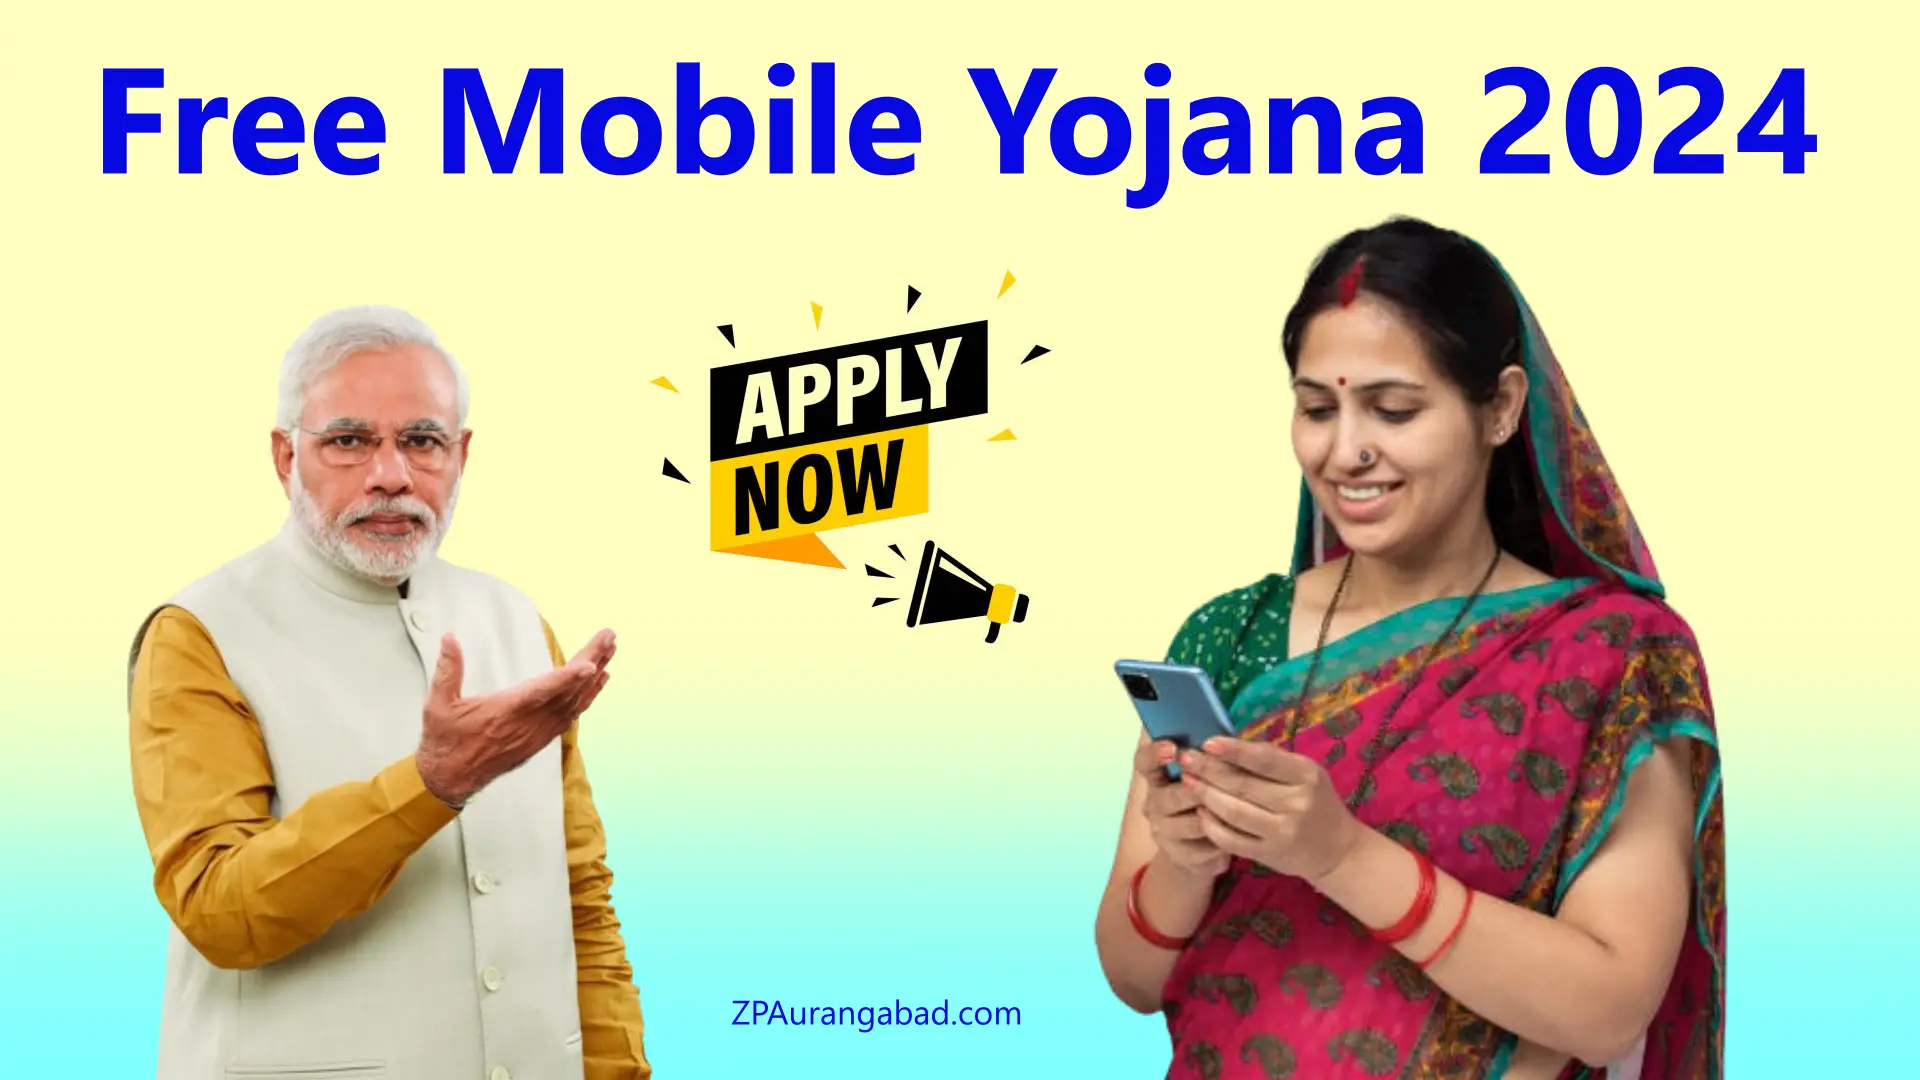 Free Mobile Yojana 2024